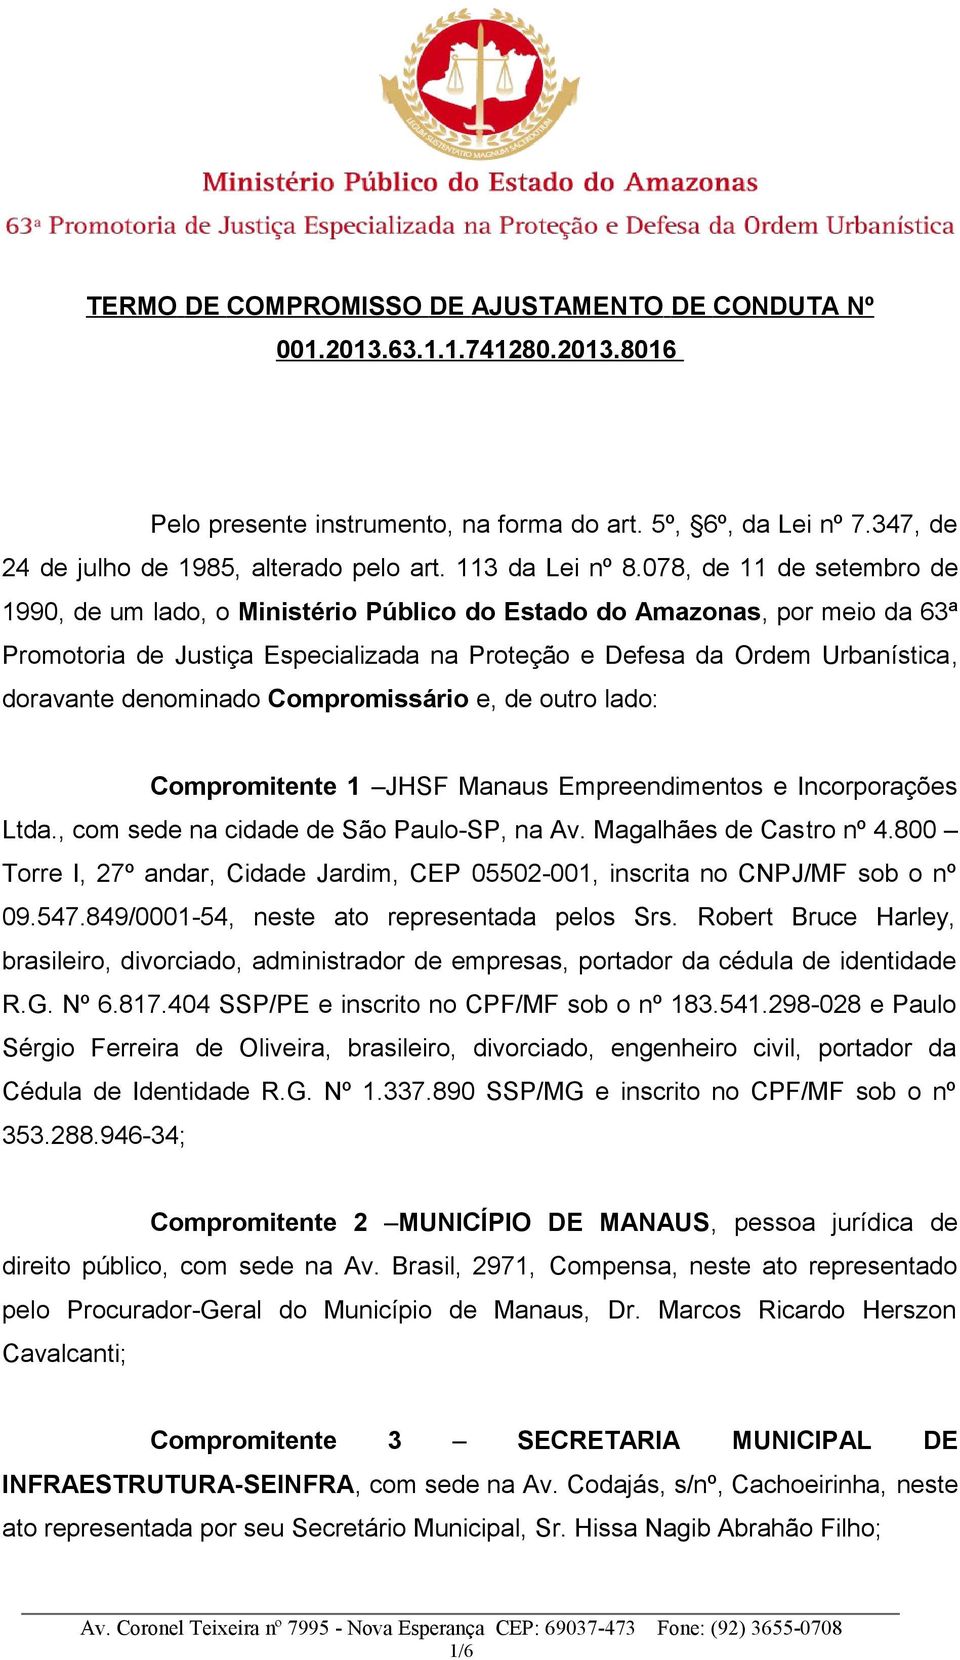 078, de 11 de setembro de 1990, de um lado, o Ministério Público do Estado do Amazonas, por meio da 63ª Promotoria de Justiça Especializada na Proteção e Defesa da Ordem Urbanística, doravante